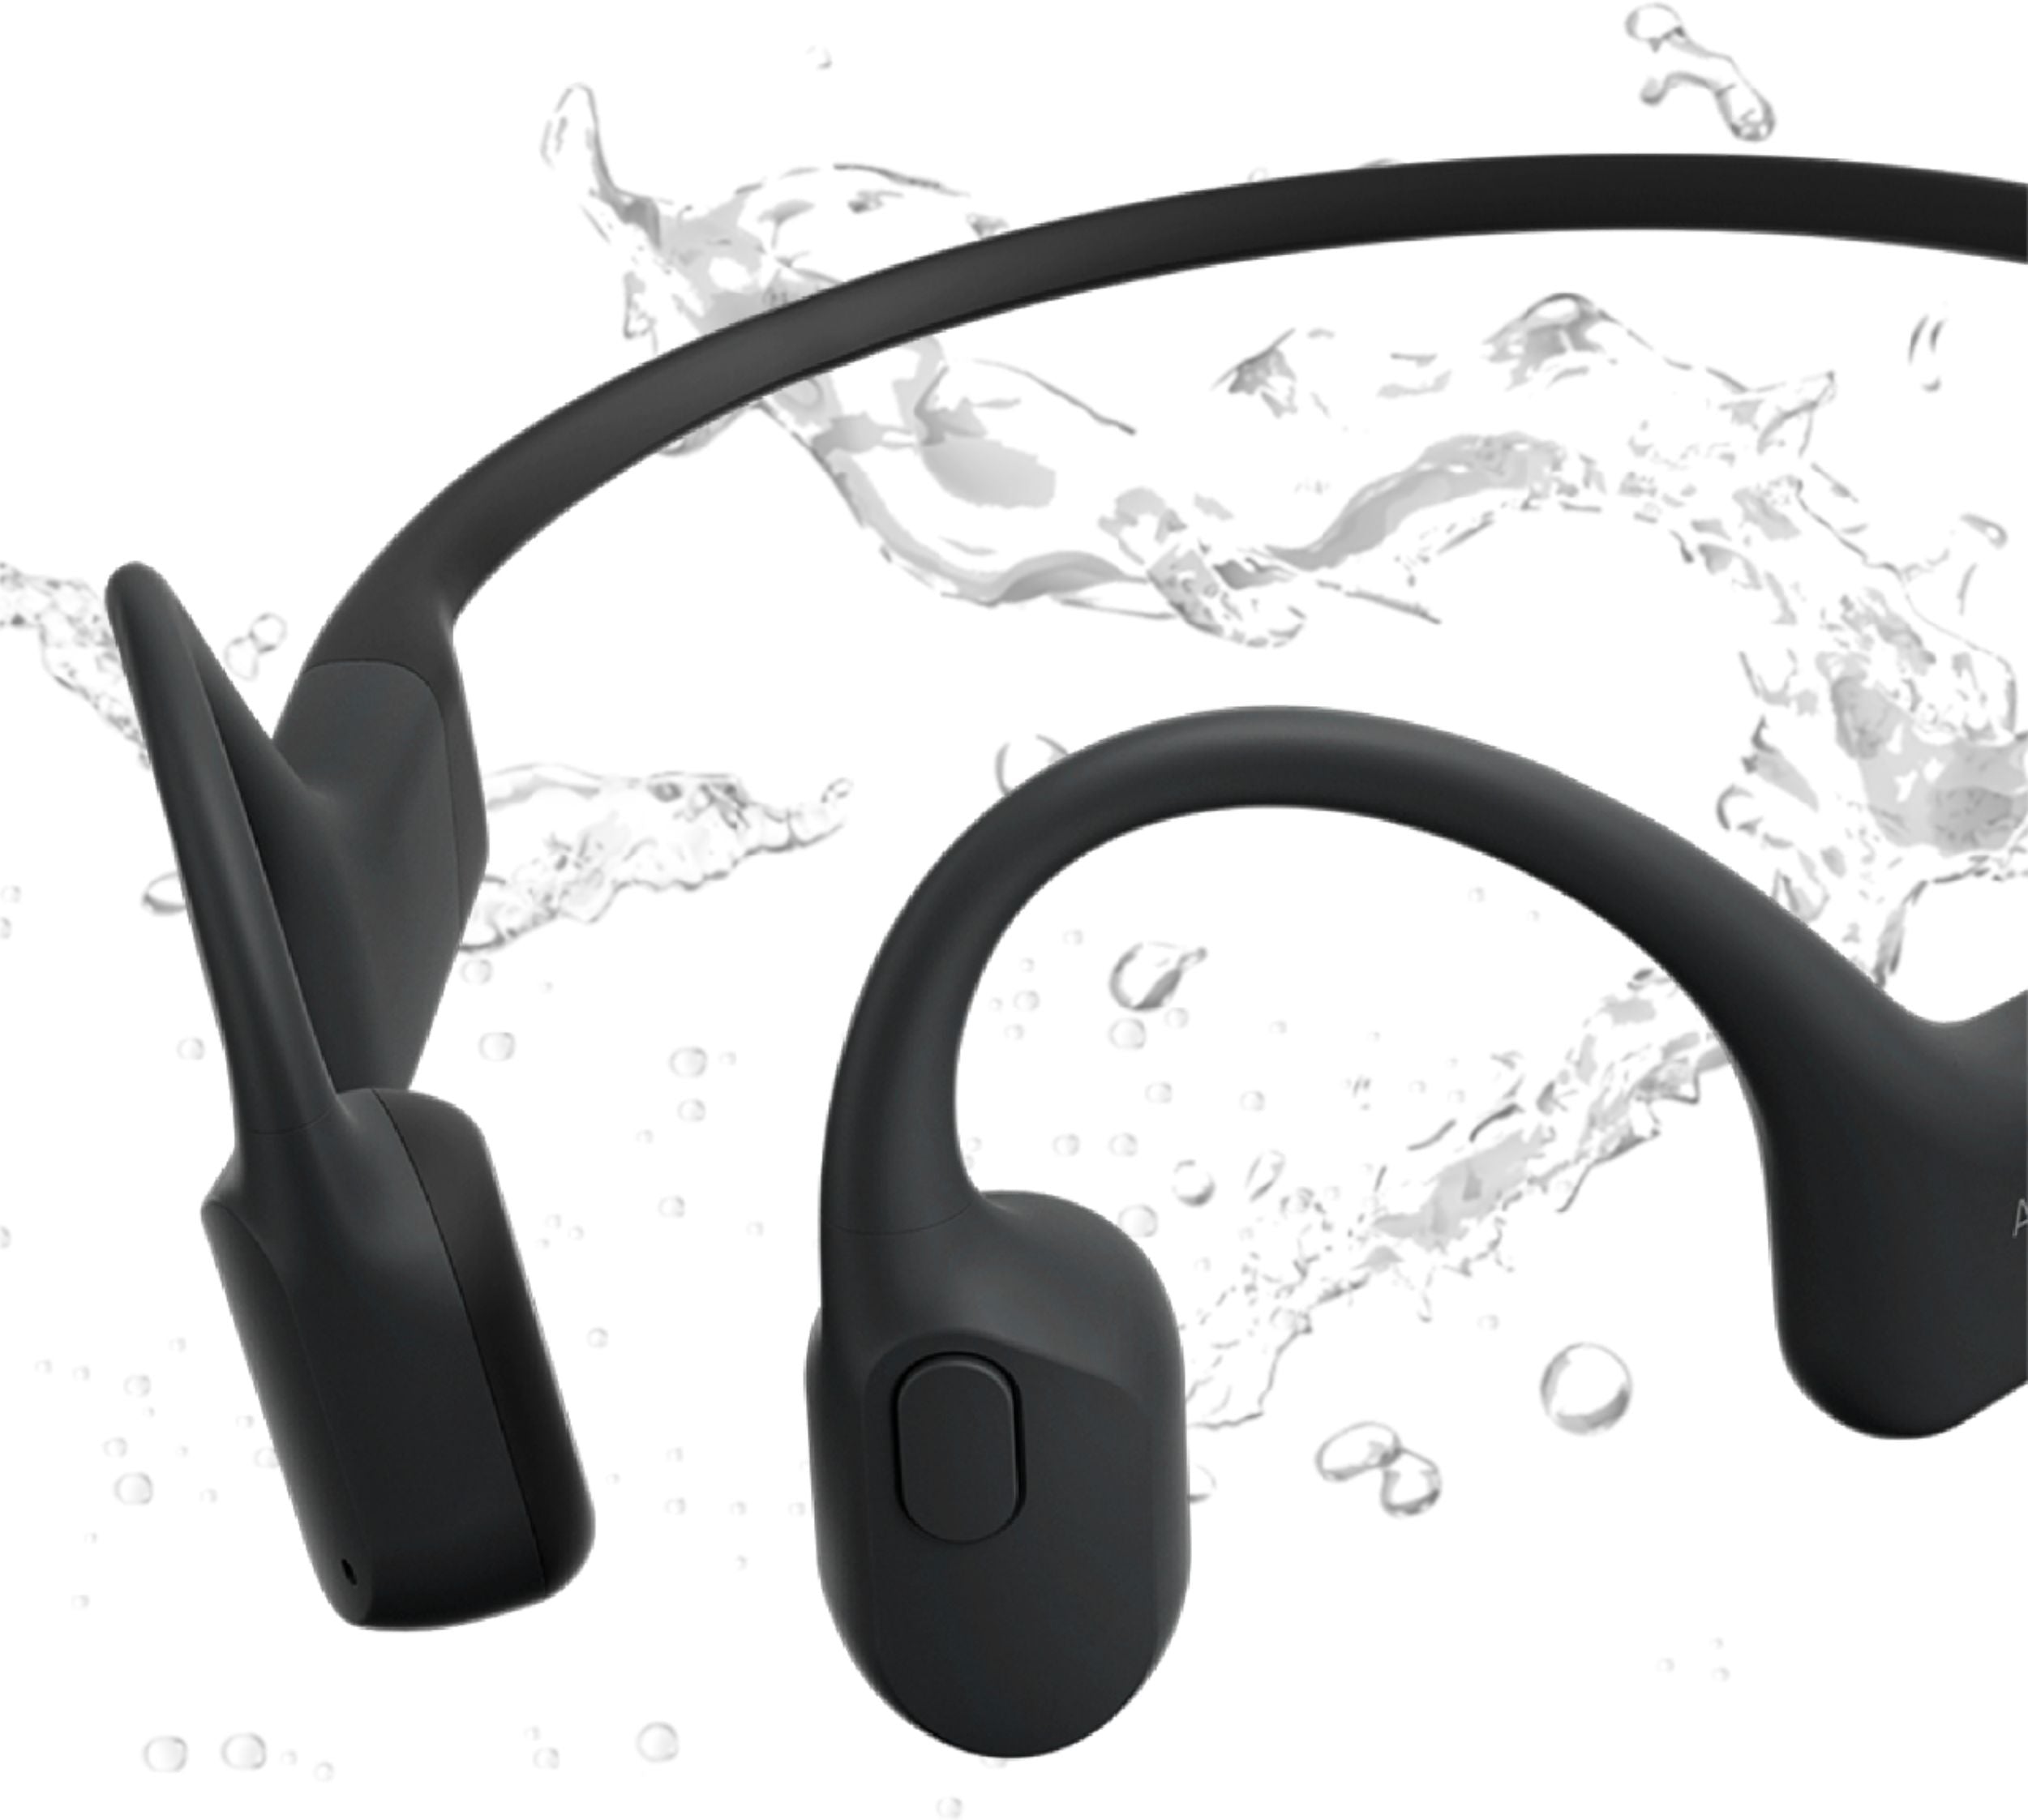 AfterShokz AS800CB Aeropex Open-Ear Wireless Headset - Cosmic Black